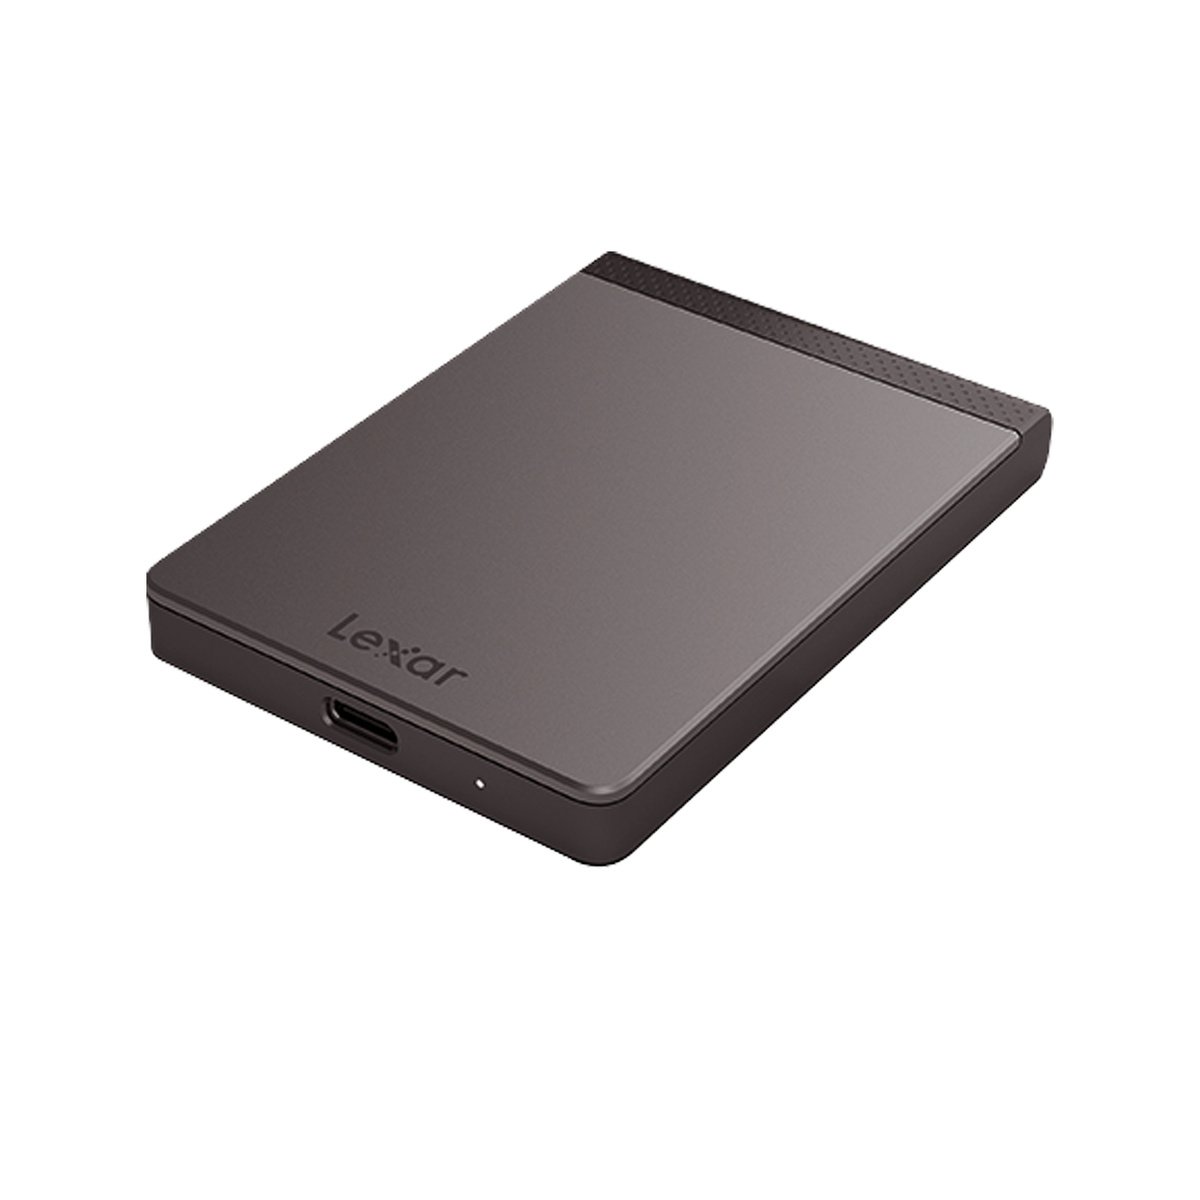 Lexar SL200 Portable SSD 512GB